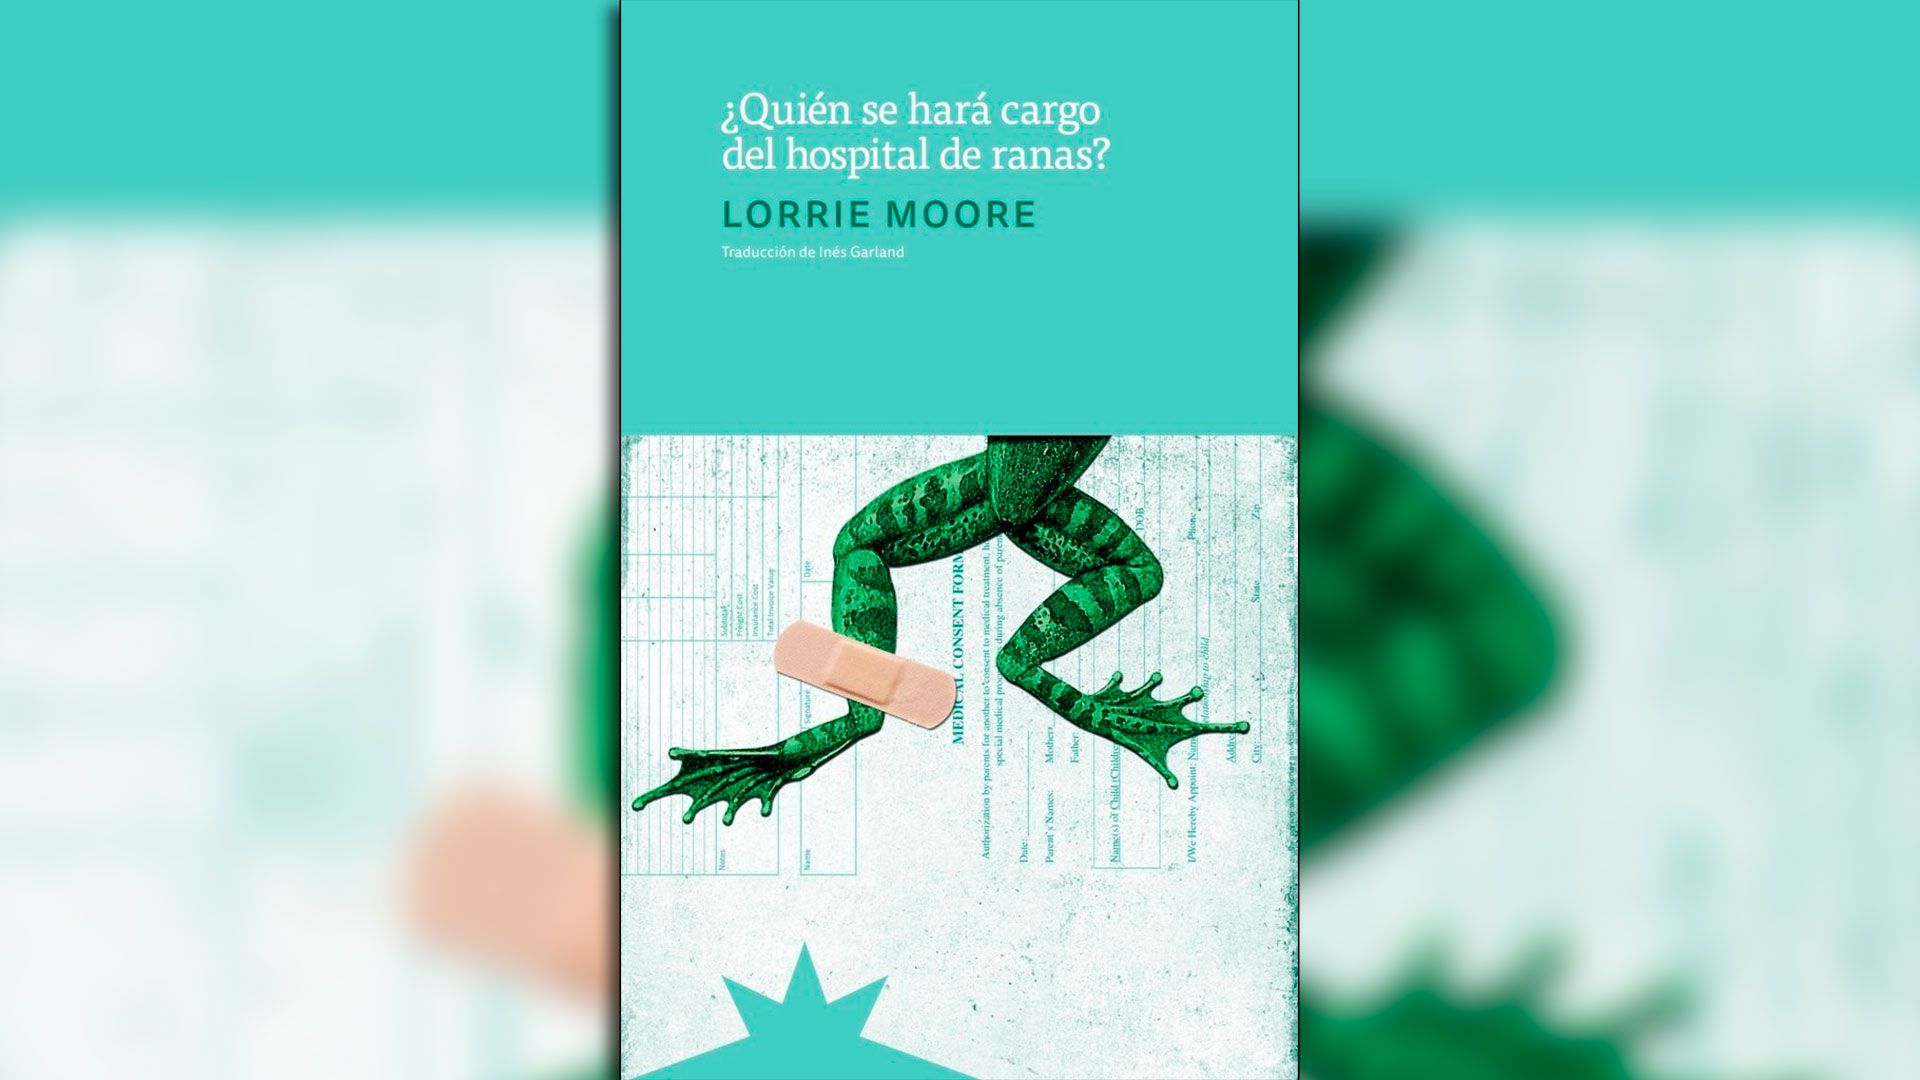 La edición local de uno de los clásicos de Lorrie Moore